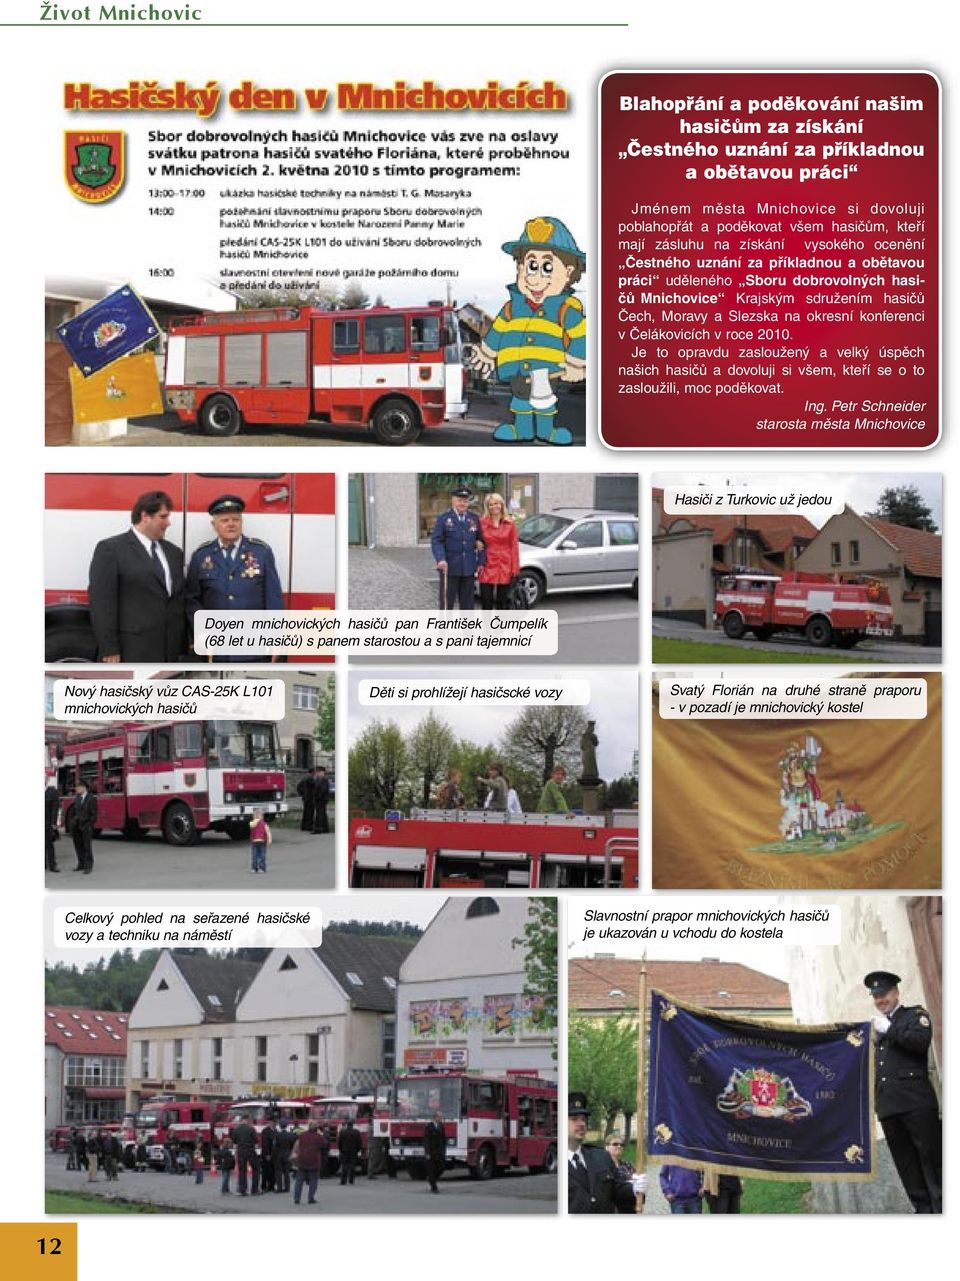 konferenci v Čelákovicích v roce 2010. Je to opravdu zasloužený a velký úspěch našich hasičů a dovoluji si všem, kteří se o to zasloužili, moc poděkovat. Ing.